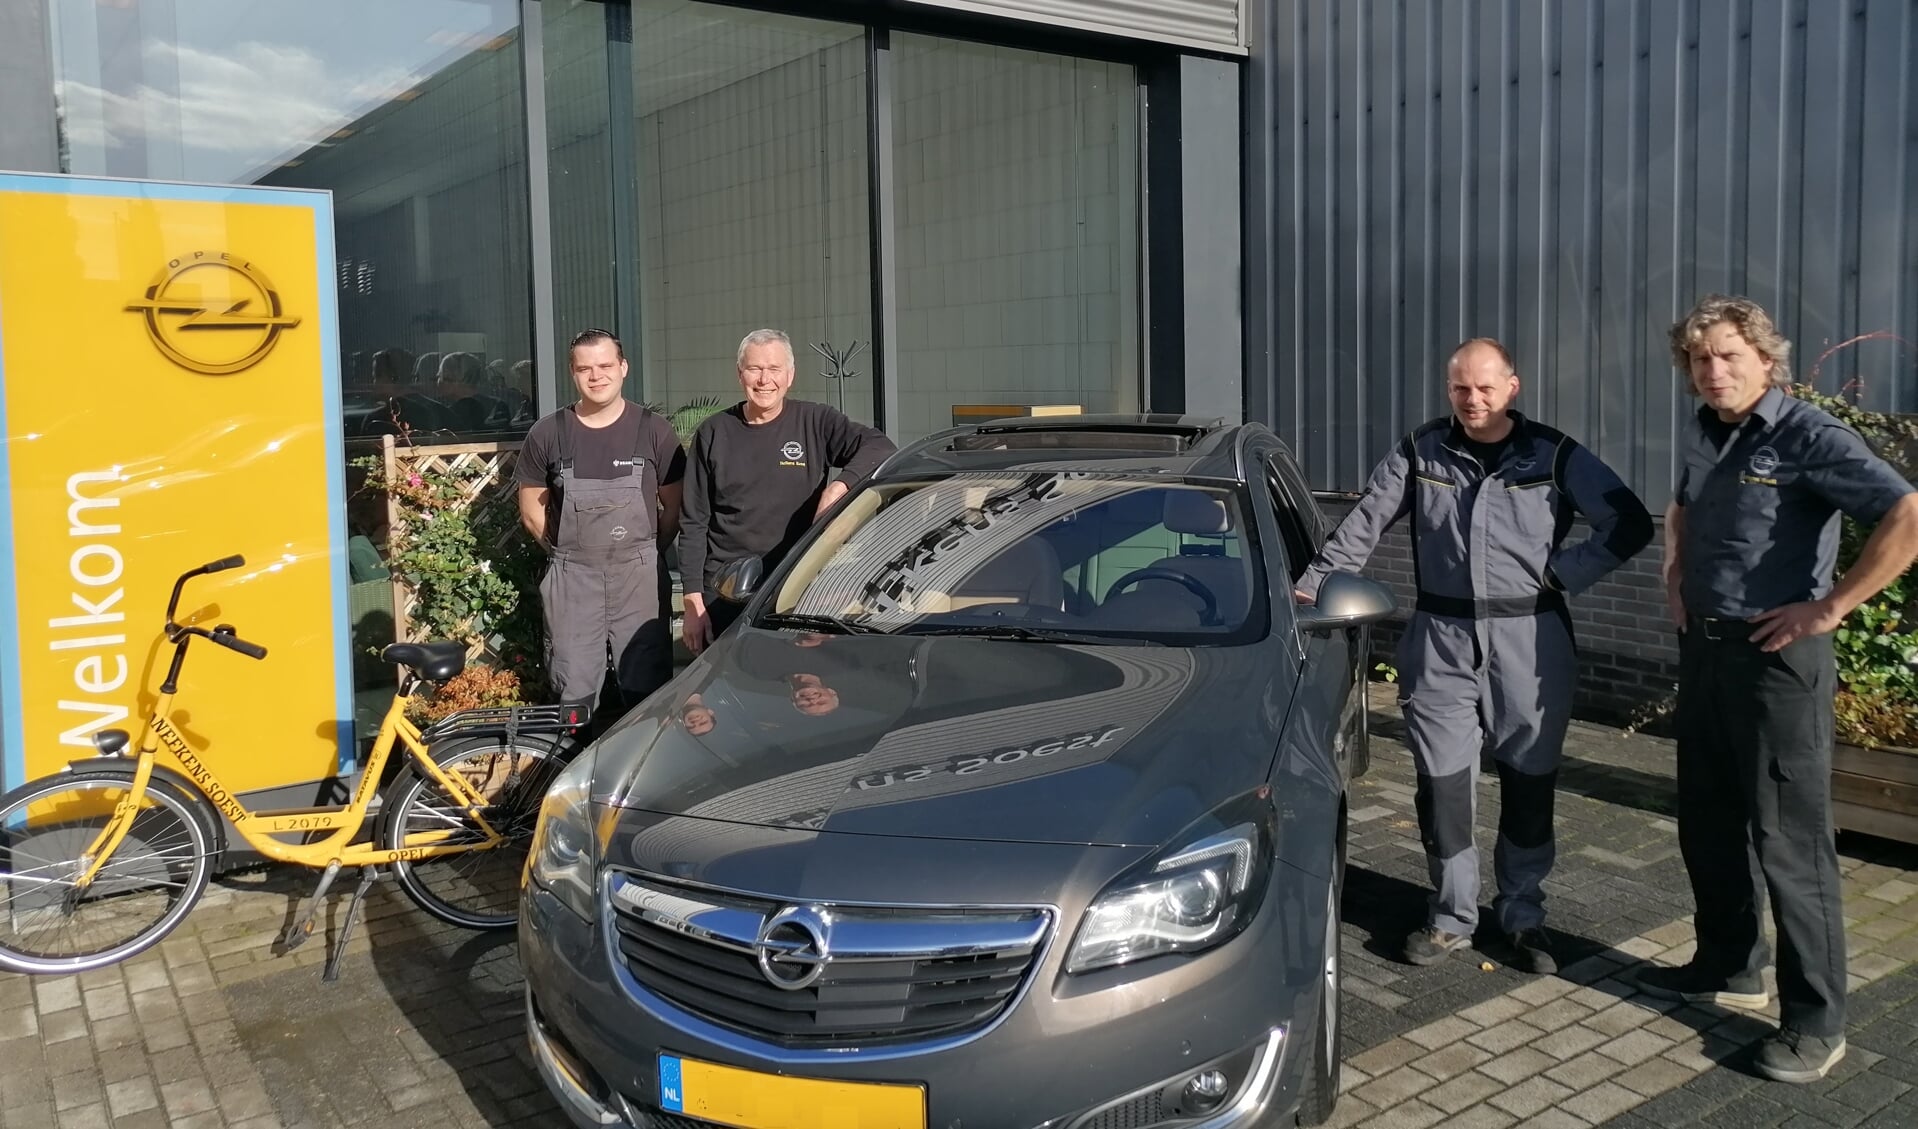 Het team van Nefkens Soest, v.l.n.r.: Martijn van den Bedum, Eric van Someren, Edwin Hoevenaar en Wilco Schouten.